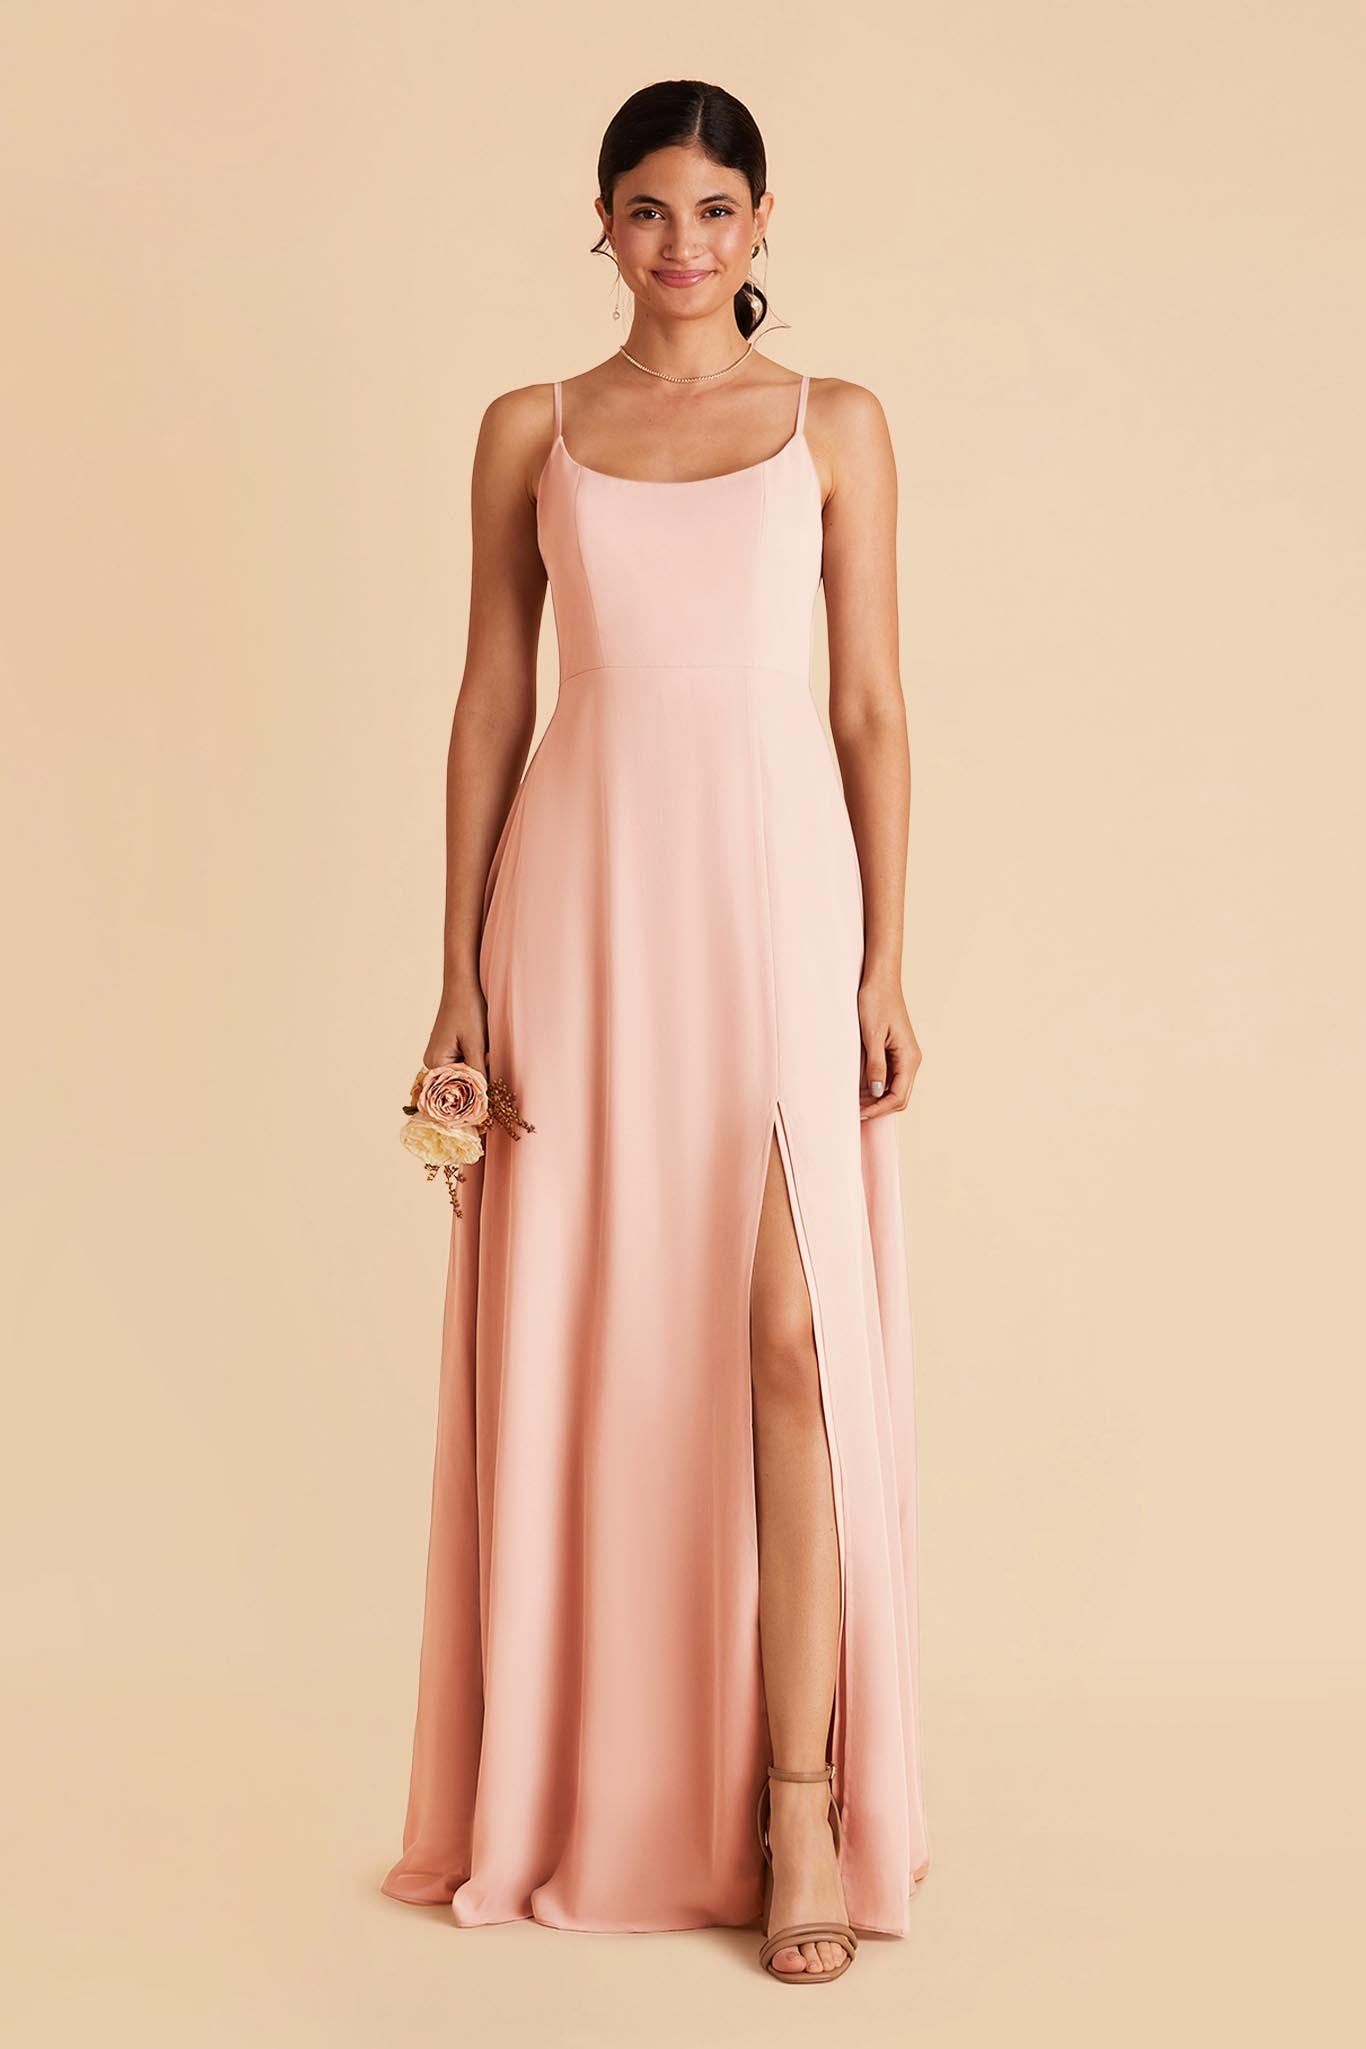 Blush Pink Amy Chiffon Dress by Birdy Grey